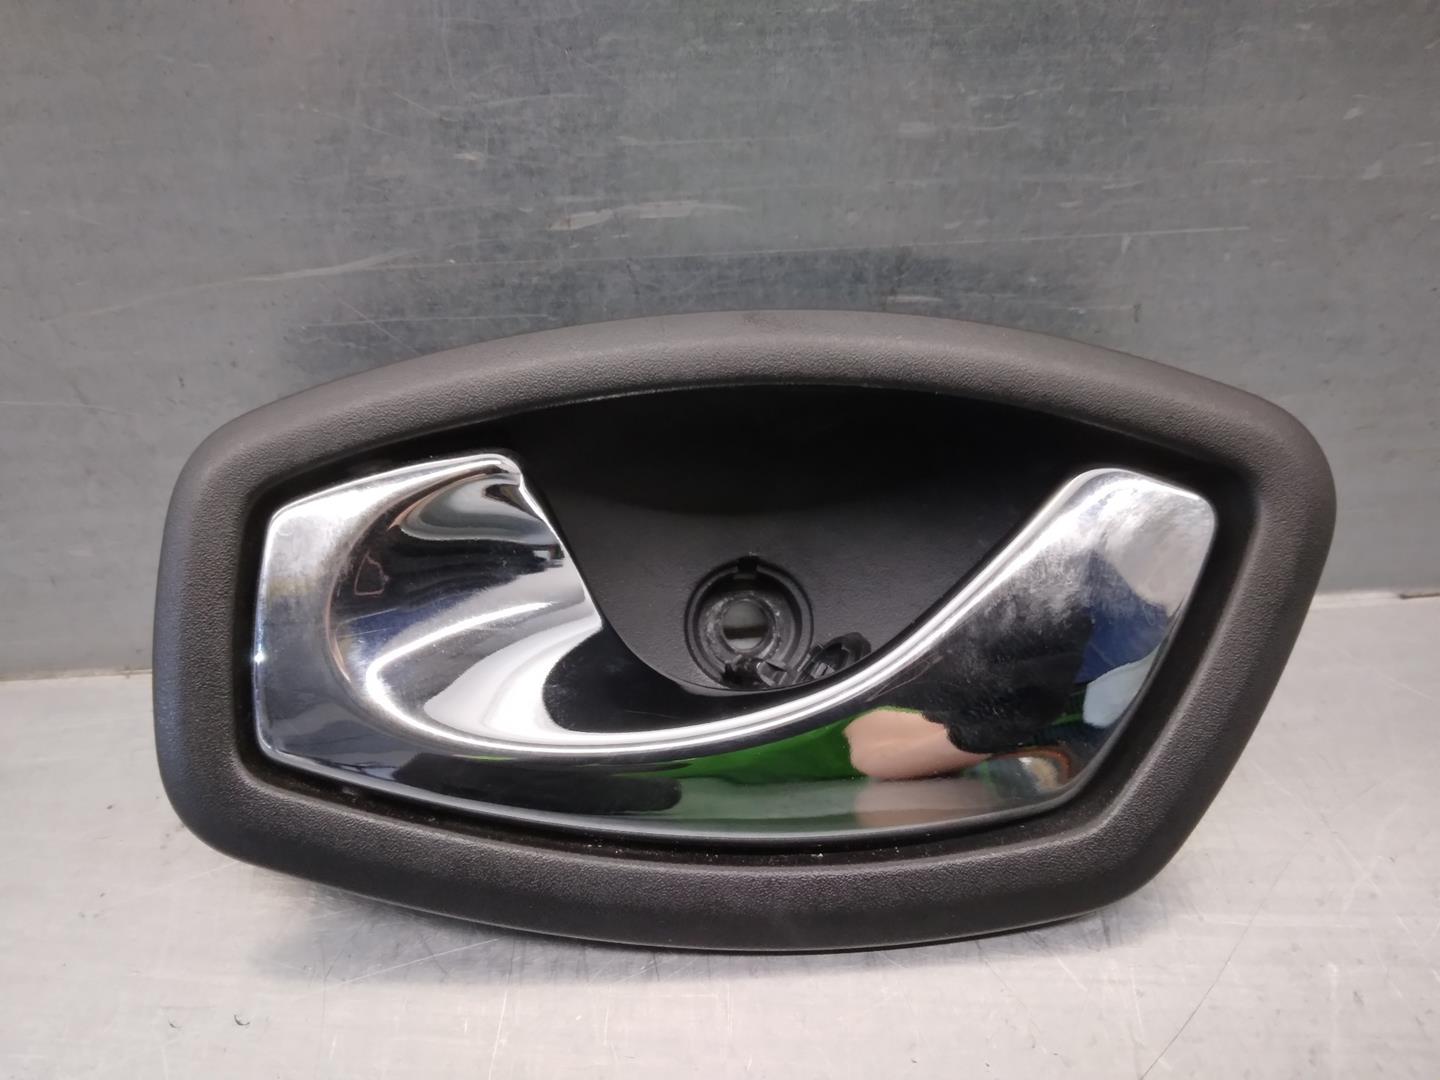 RENAULT Clio 3 generation (2005-2012) Front Left Door Interior Handle Frame 806700006R, 5PUERTAS 21728931